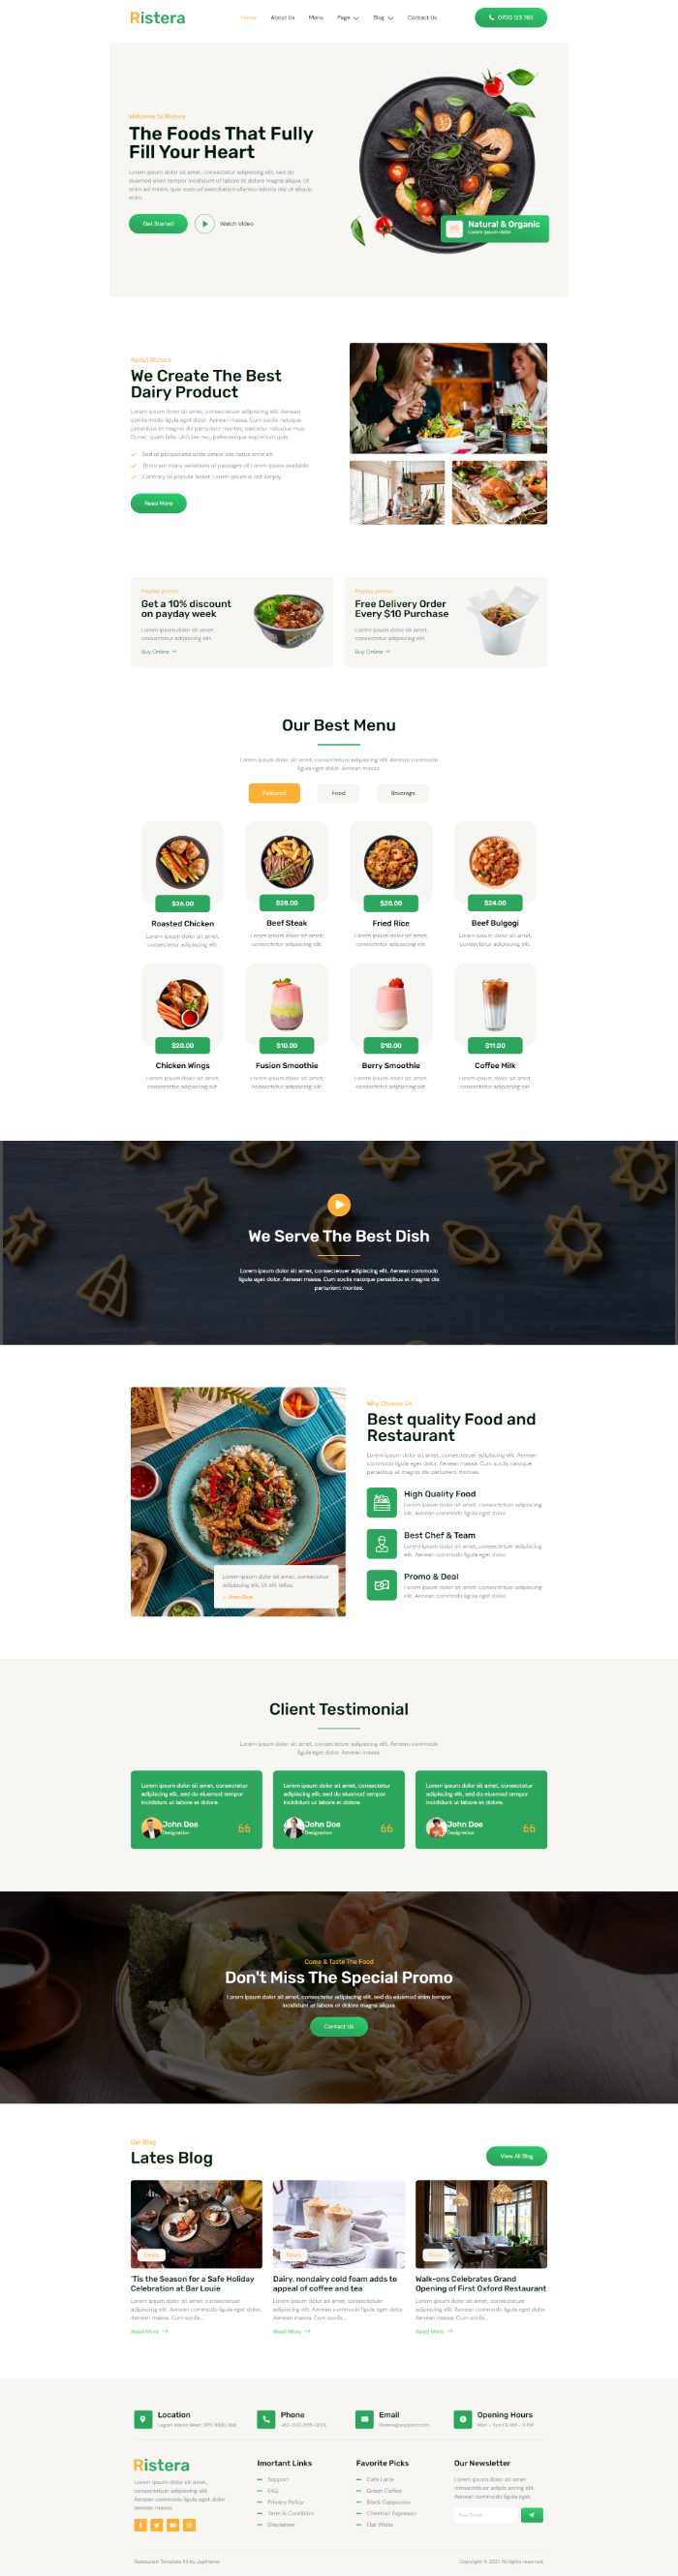 Mẫu website dịch vụ nhà hàng - Ristera